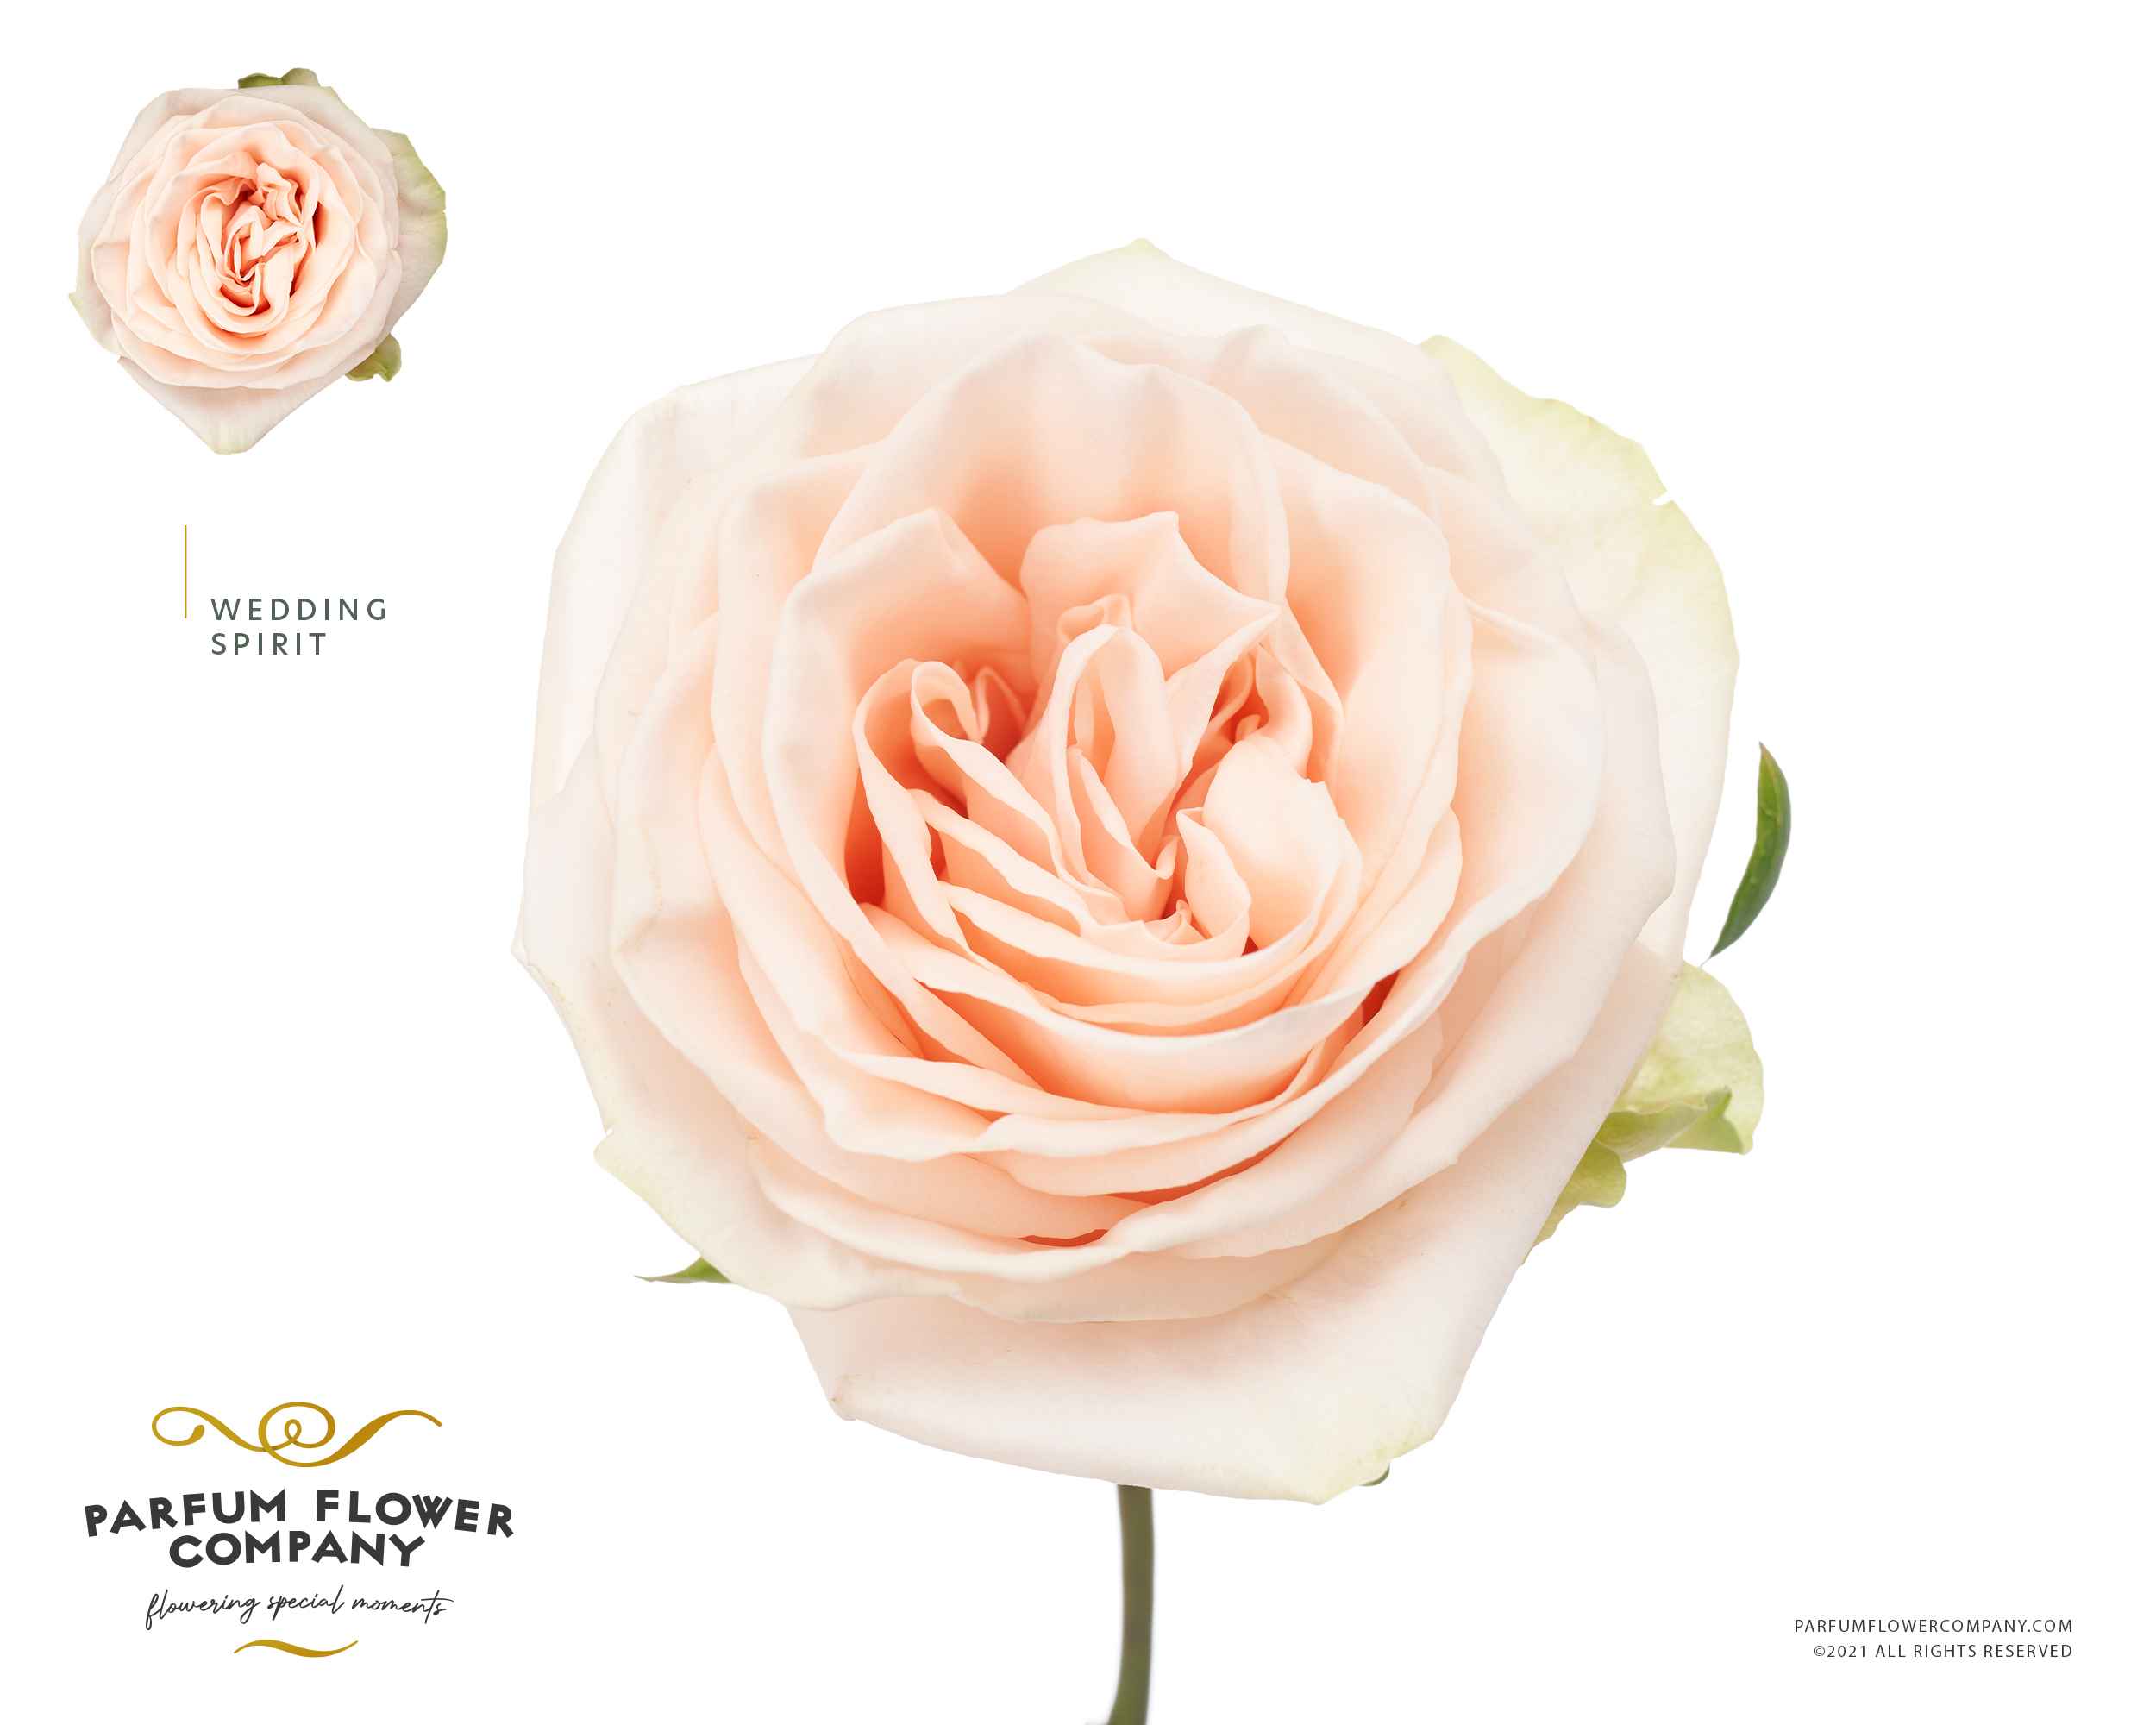 Срезанные цветы оптом Rosa la garden wedding spirit от 12шт из Голландии с доставкой по России